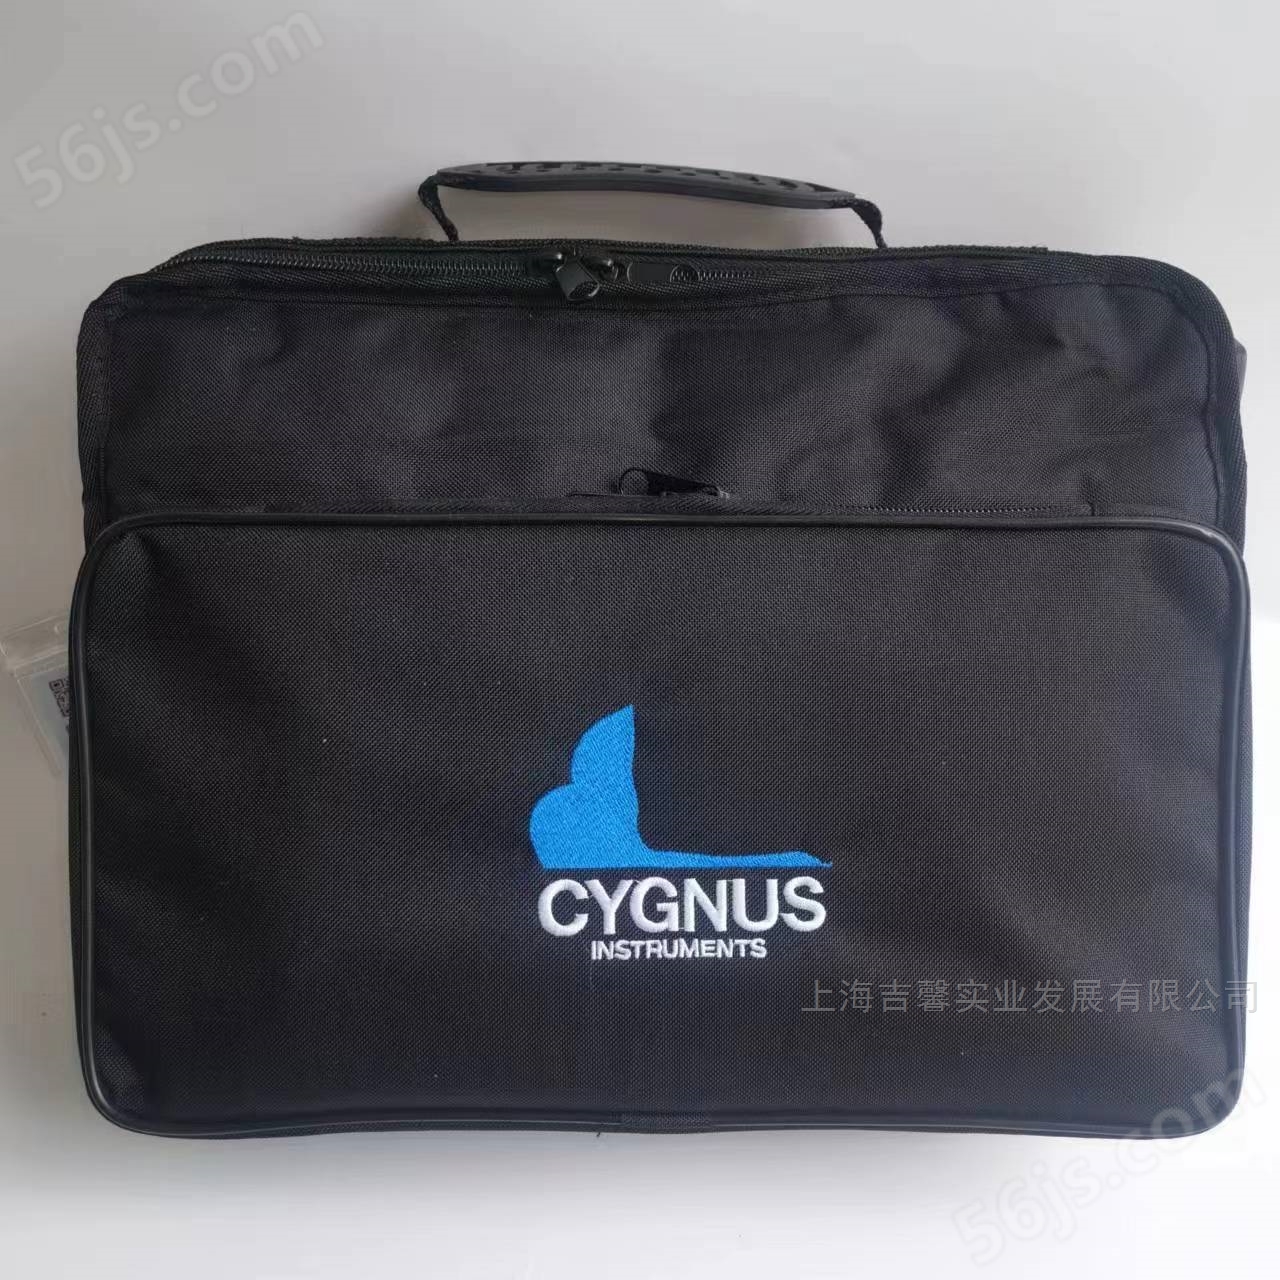  英国Cygnus 4+超声波测厚仪价格